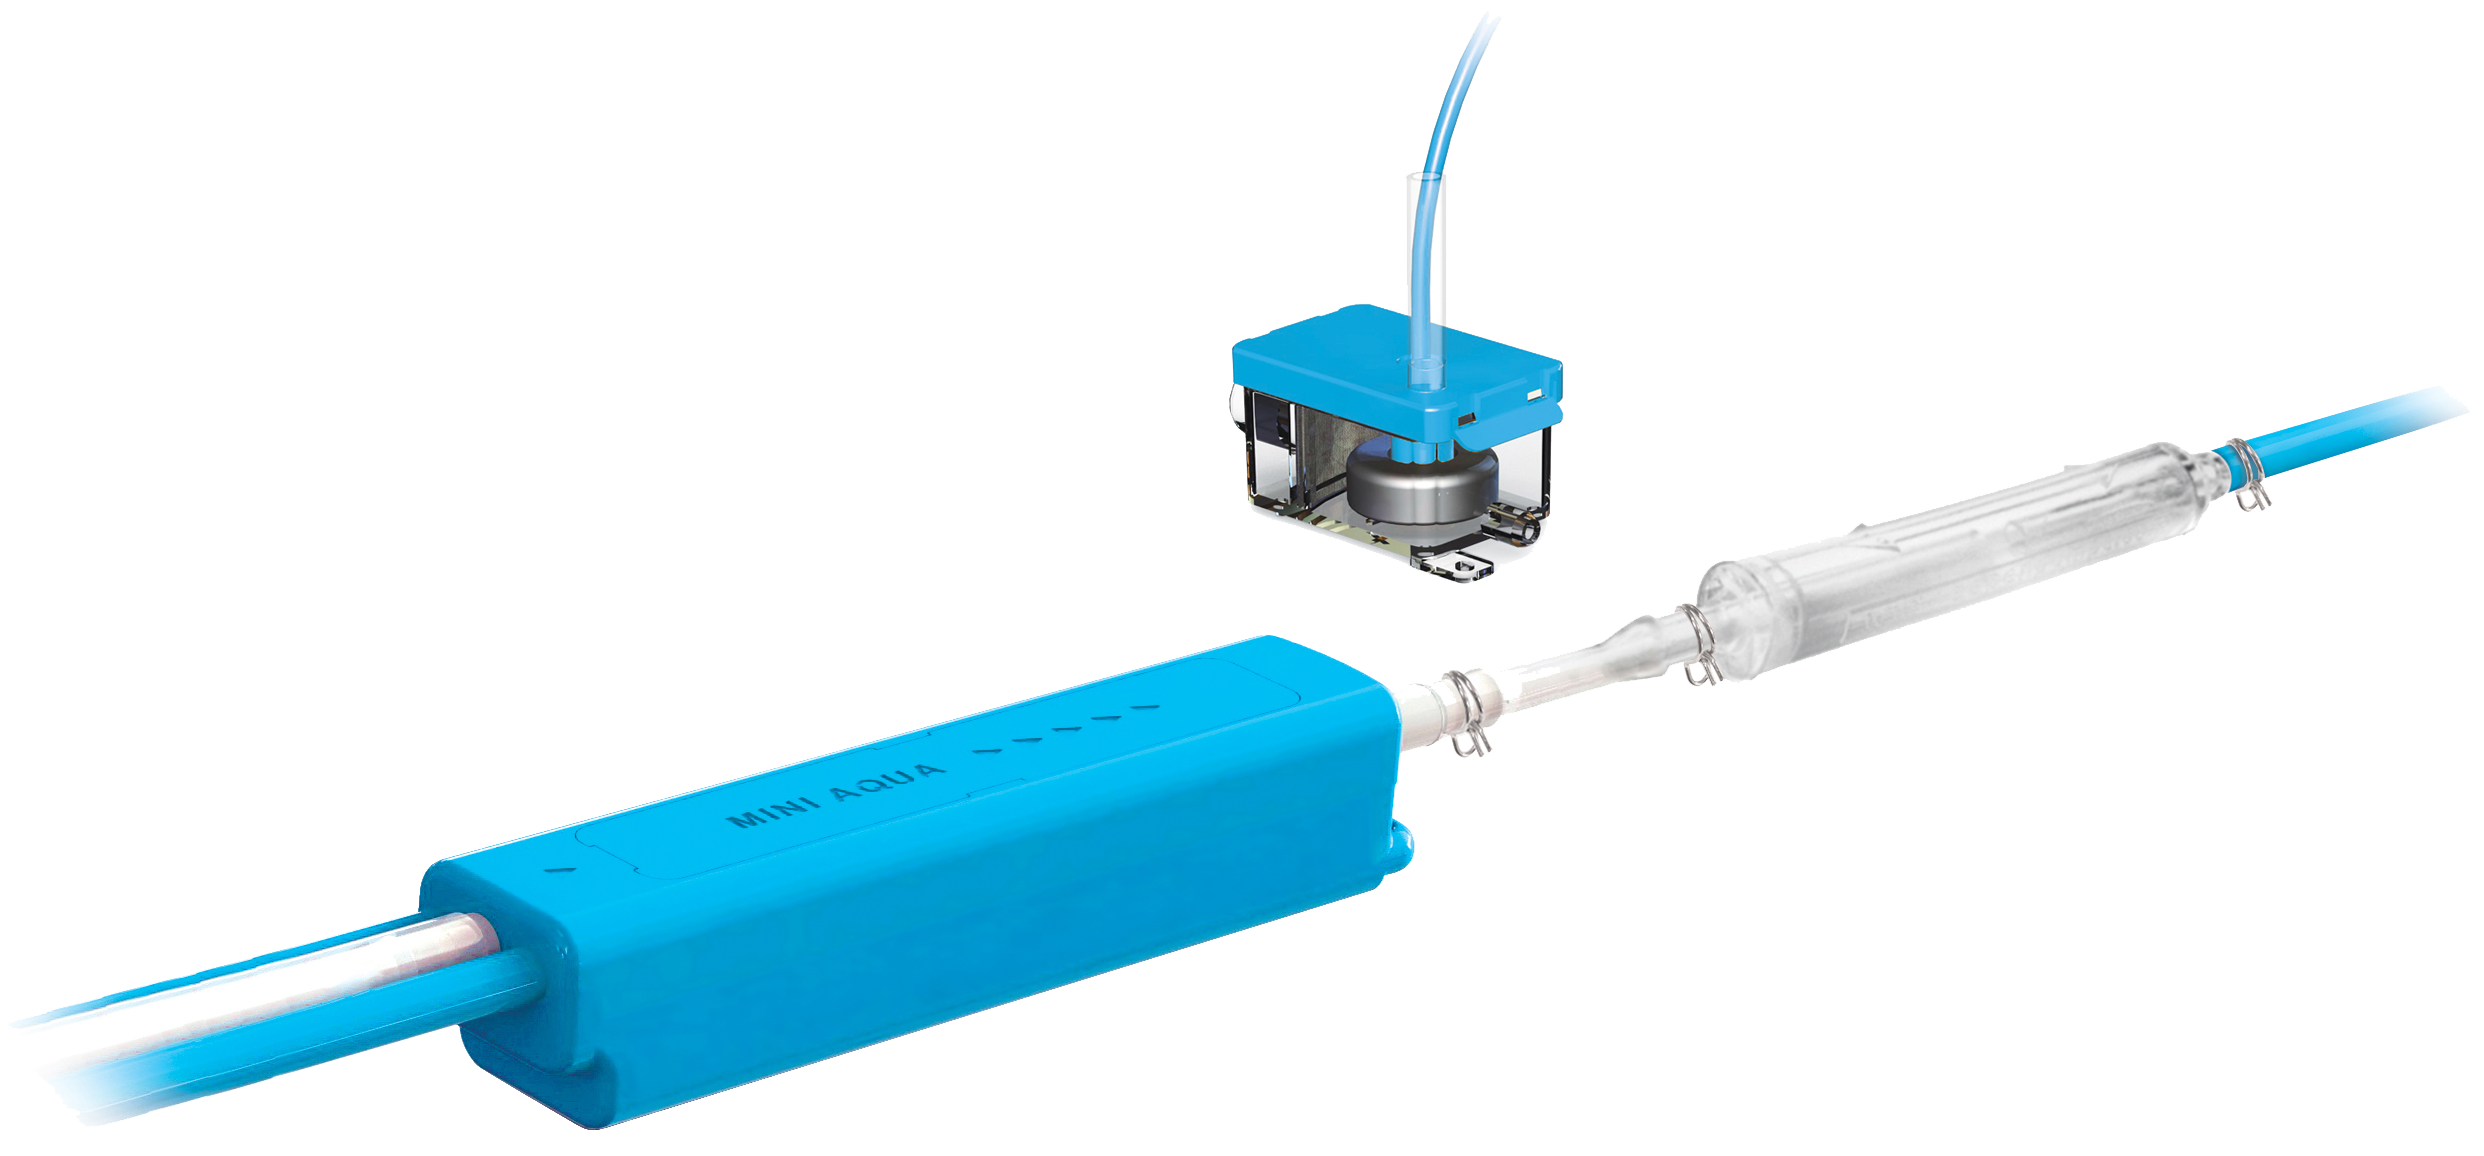 RTU ECD - spray de 1 L nettoyant et désinfectant pour évaporateur - Aspen  Pumps - 177ACE0013